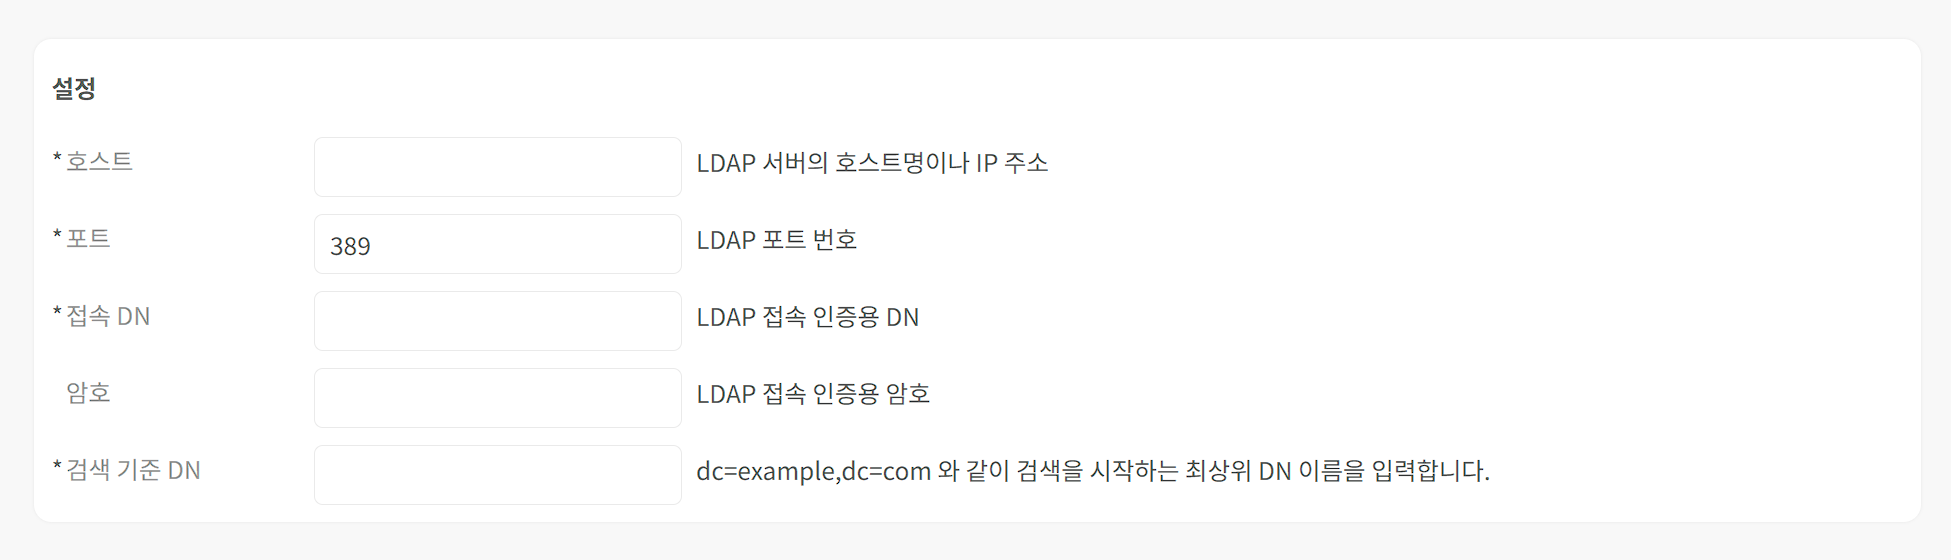 접속 프로파일 - LDAP 접속 설정